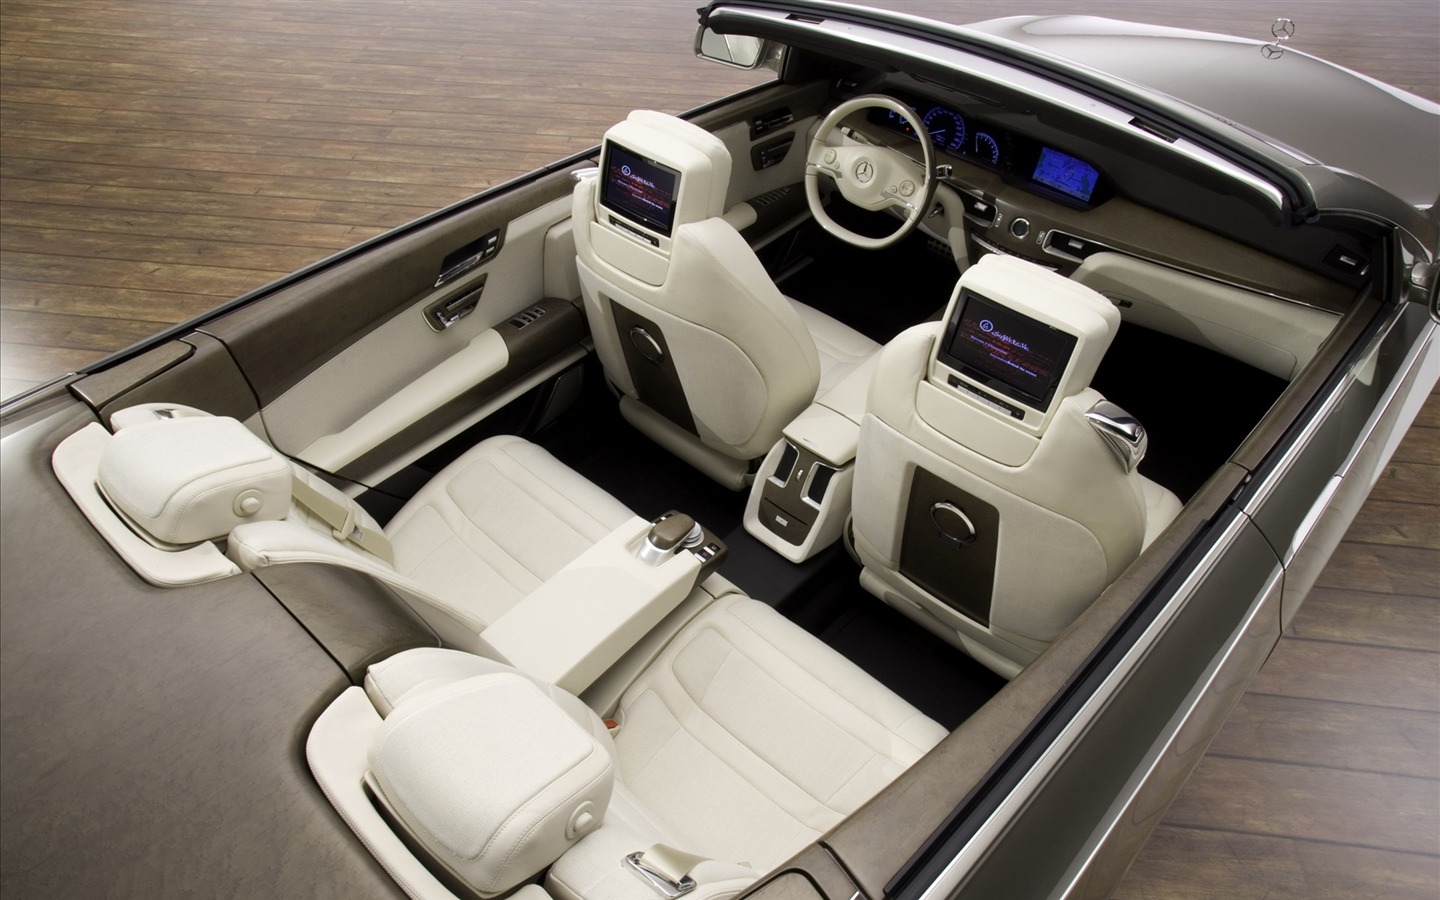 Mercedes-Benz fondos de escritorio de concept car (1) #8 - 1440x900